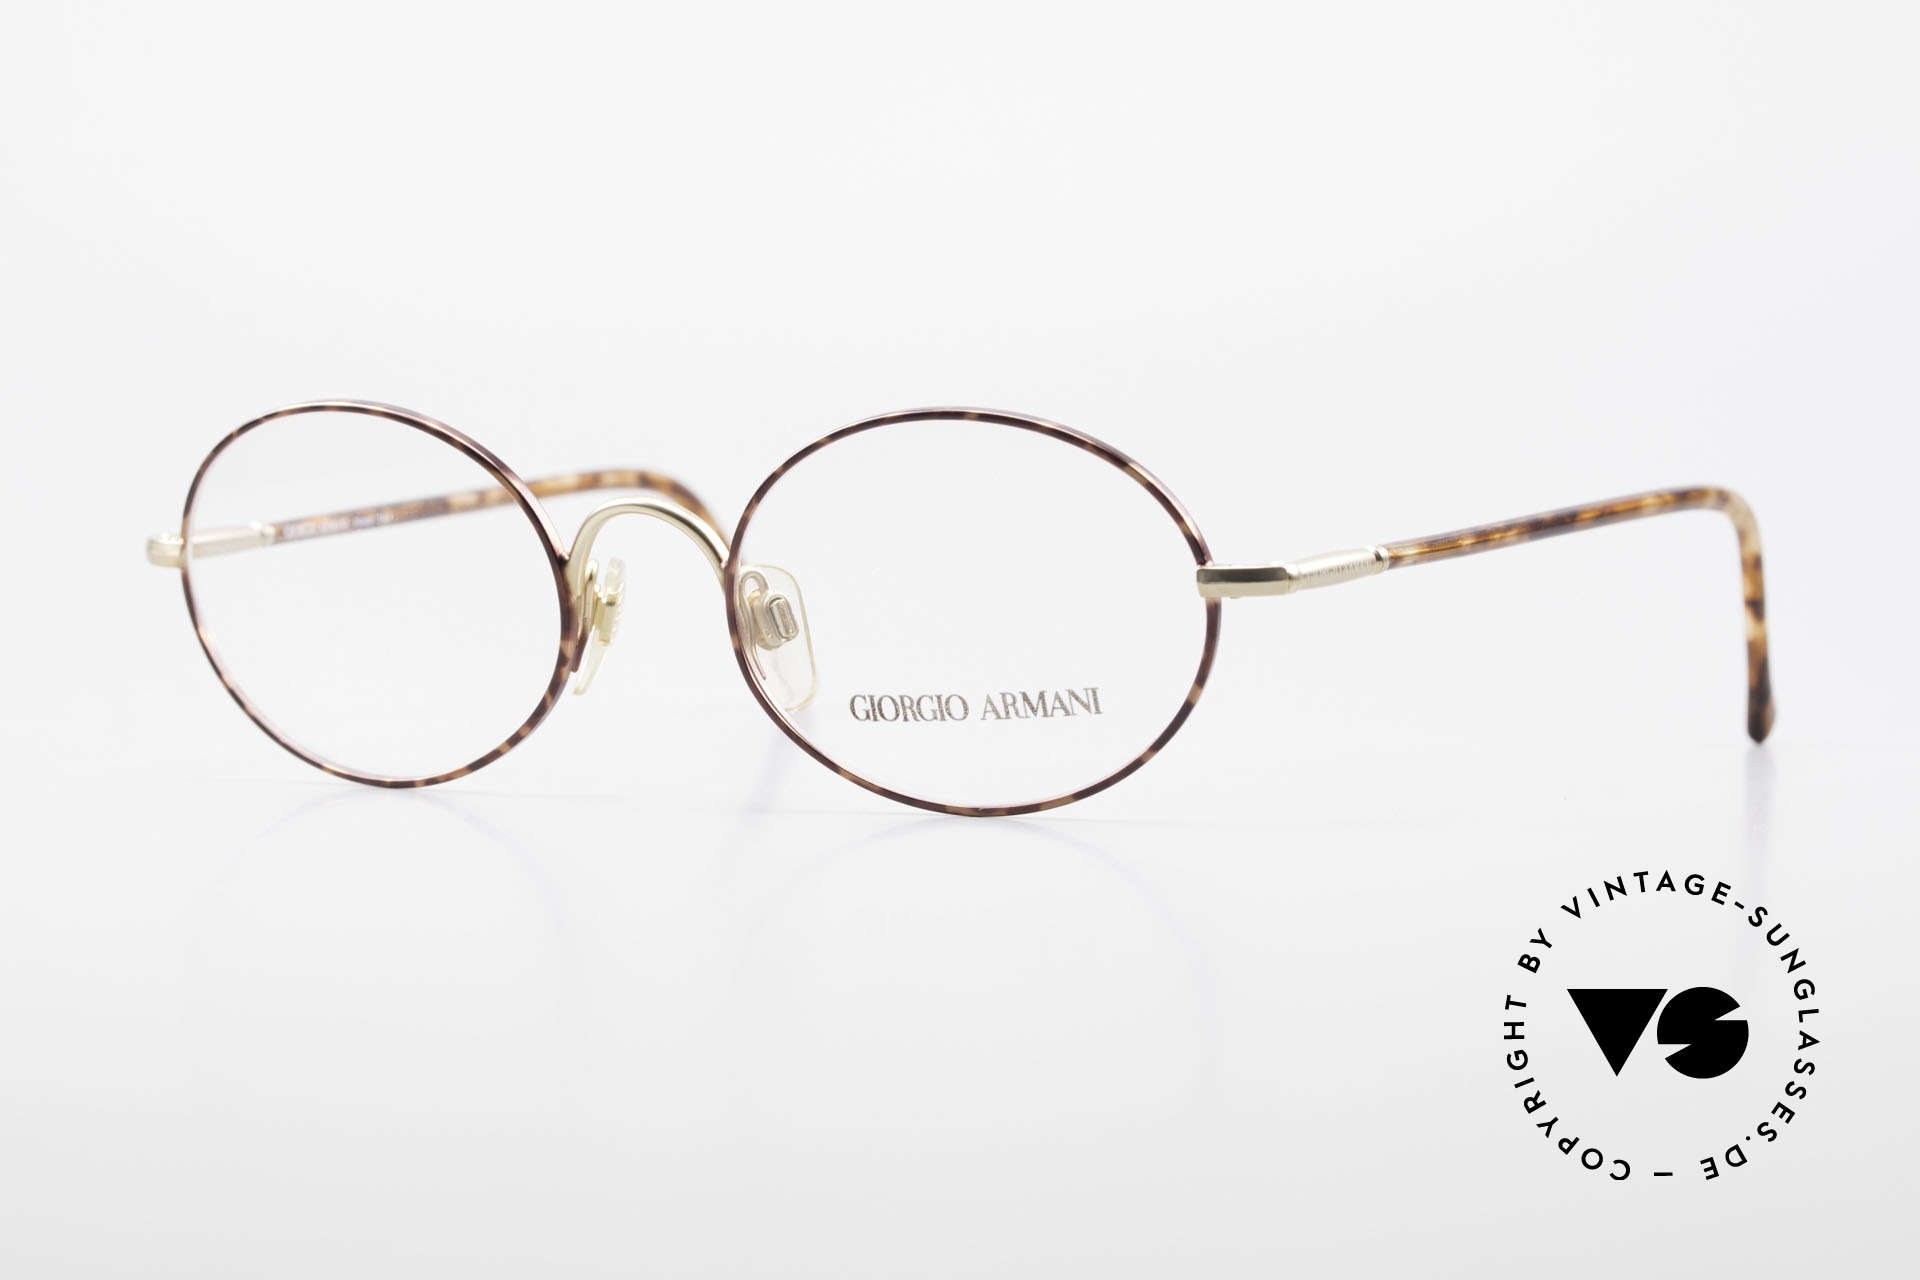 Giorgio Armani 189 Classic Oval Designer Frame, timeless Giorgio Armani designer eyeglasses; 50/19, Made for Men